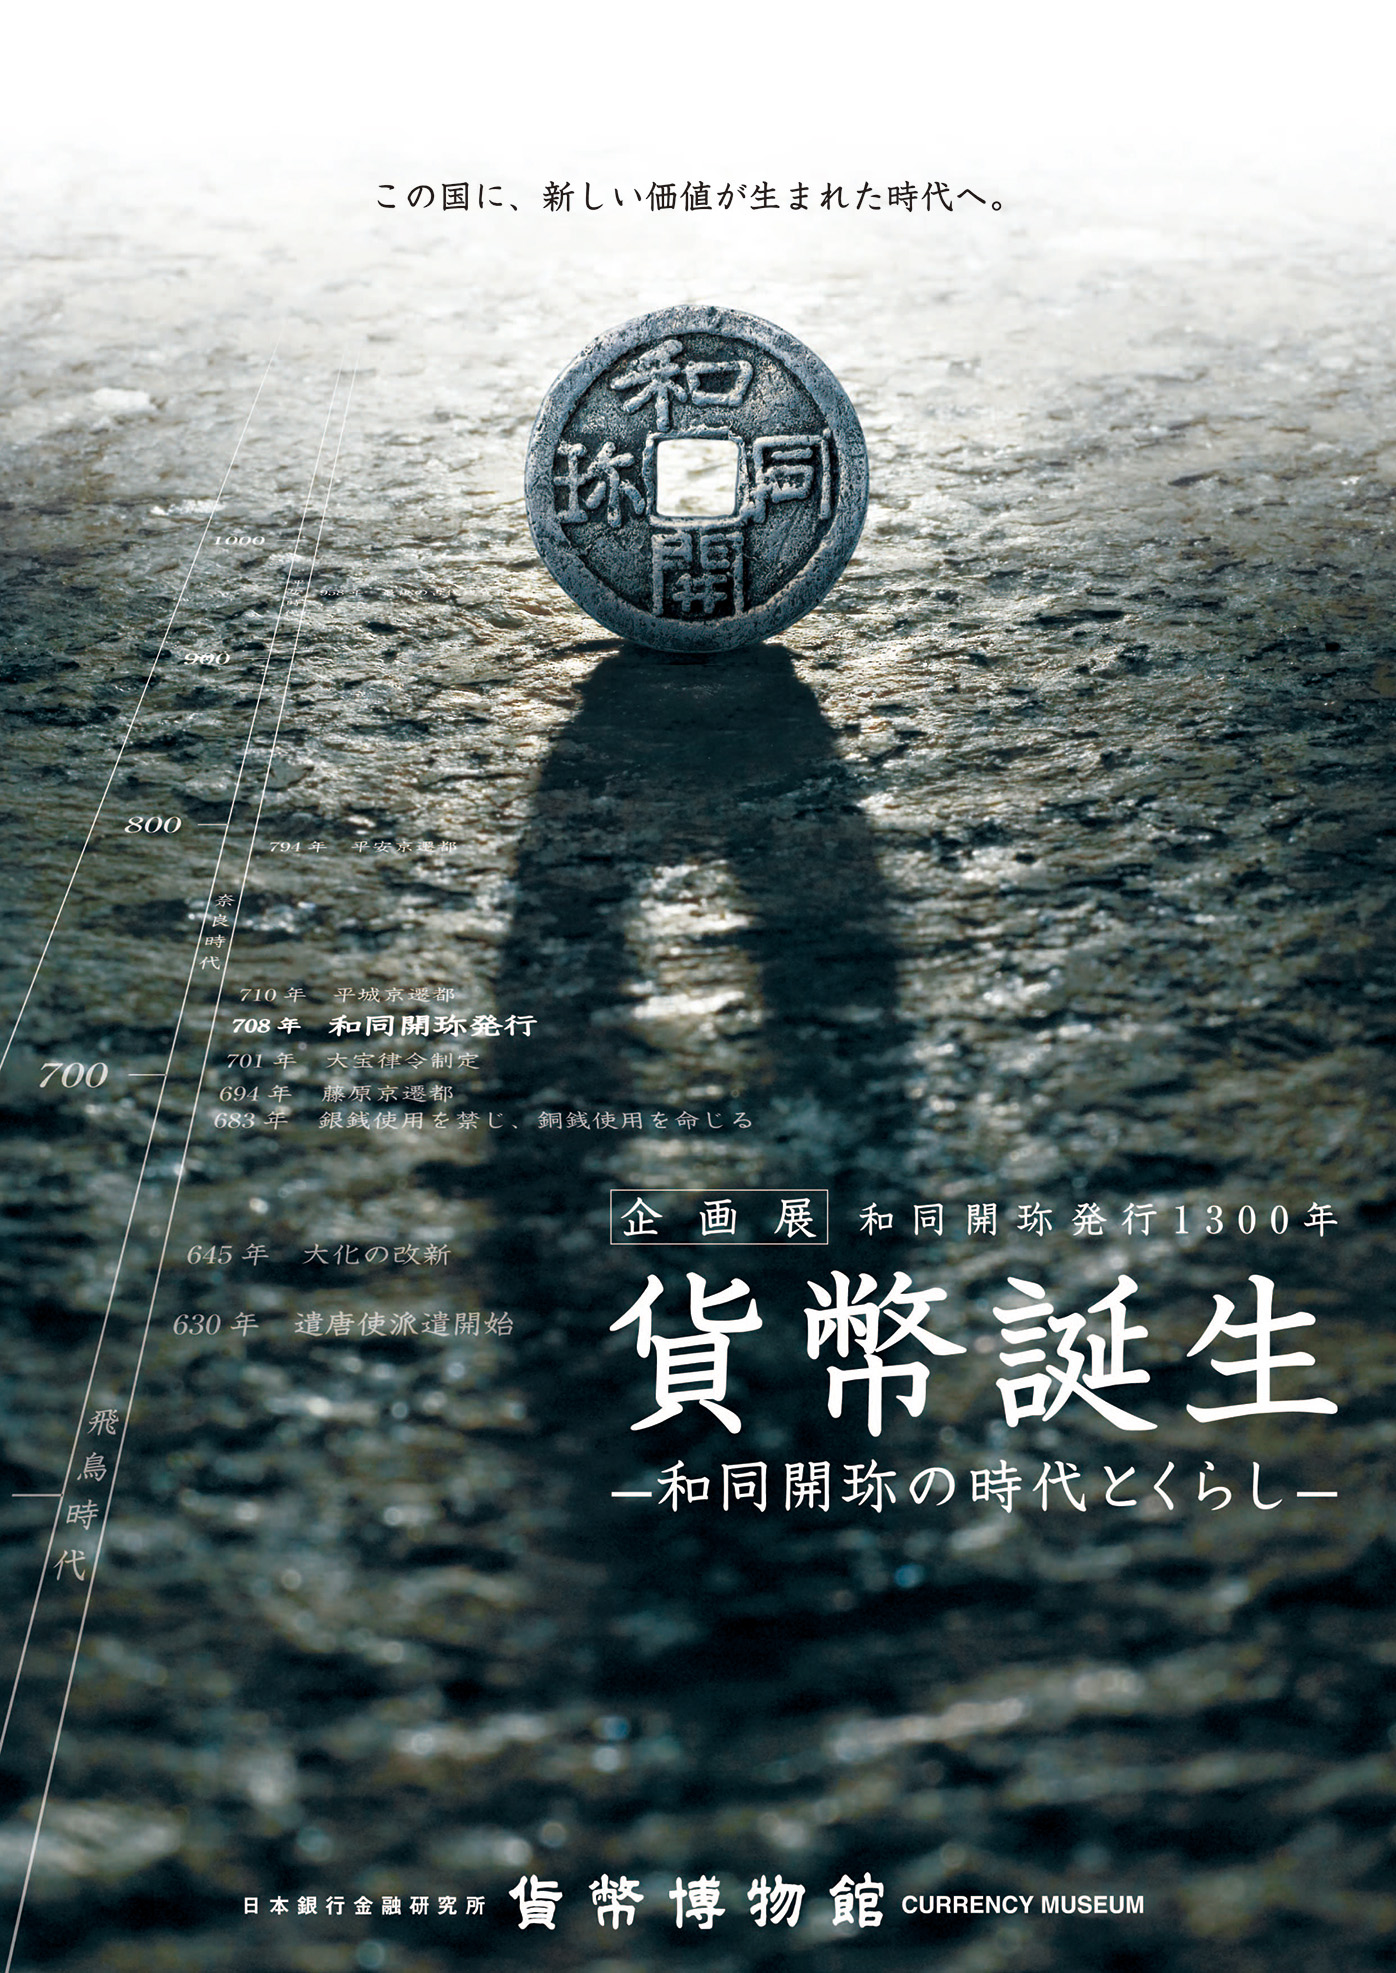 日本銀行貨幣博物館Webサイト、2007年企画展ポスター